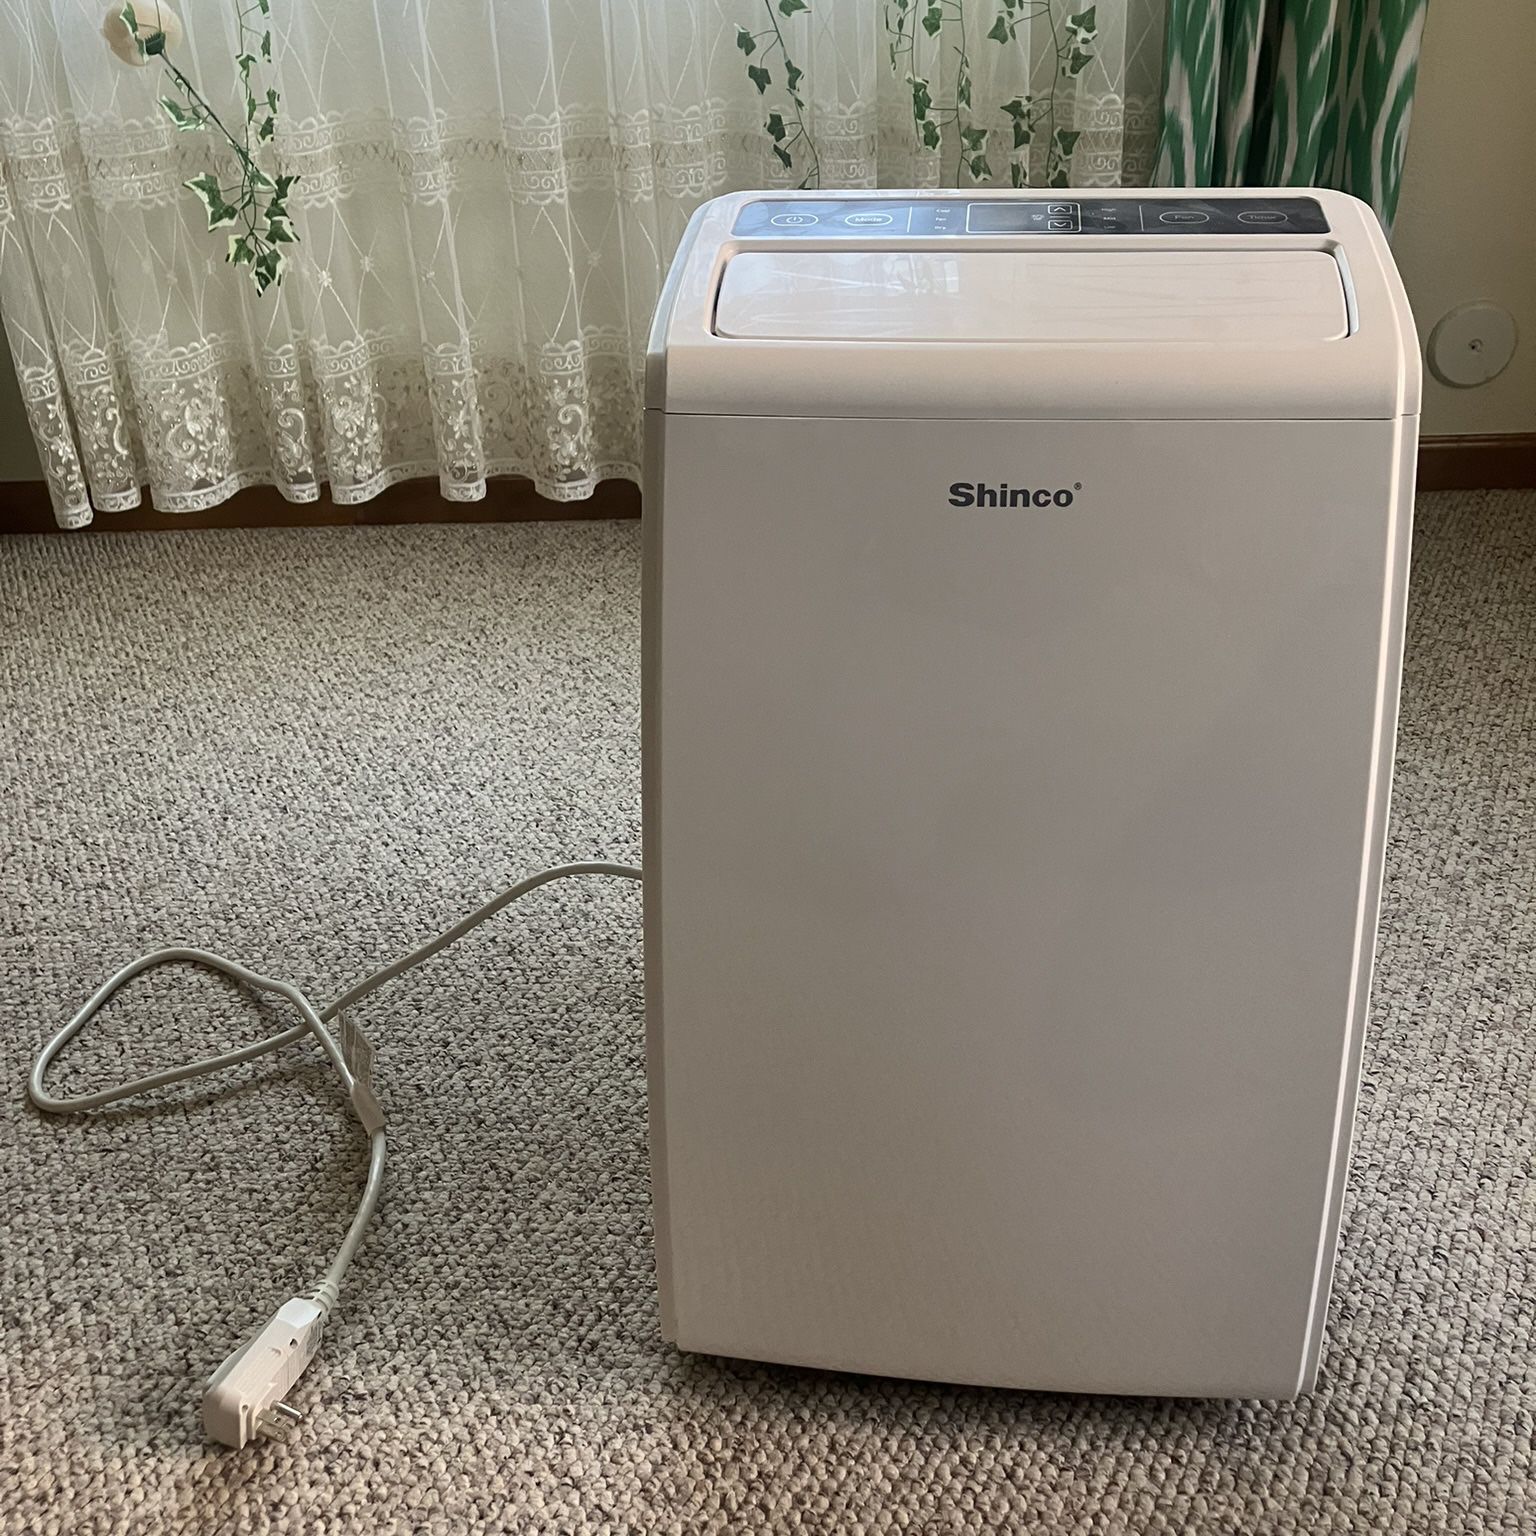 Shinco Portable Air Conditioner - Almost Brand New